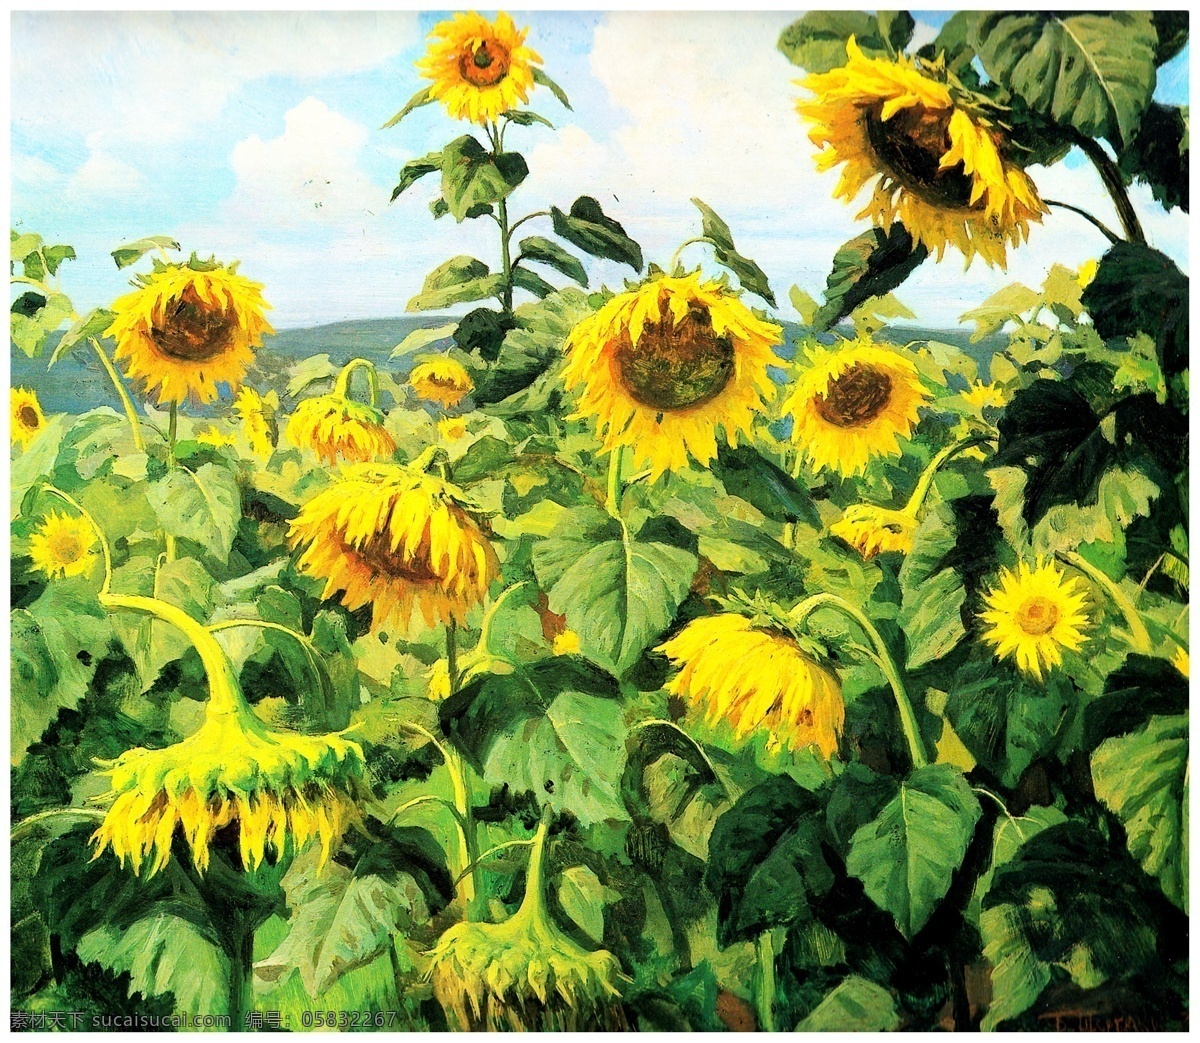 向日葵油画 向日葵 太阳花 向日葵花朵 绿叶 布面油画 油画集 绘画书法 文化艺术